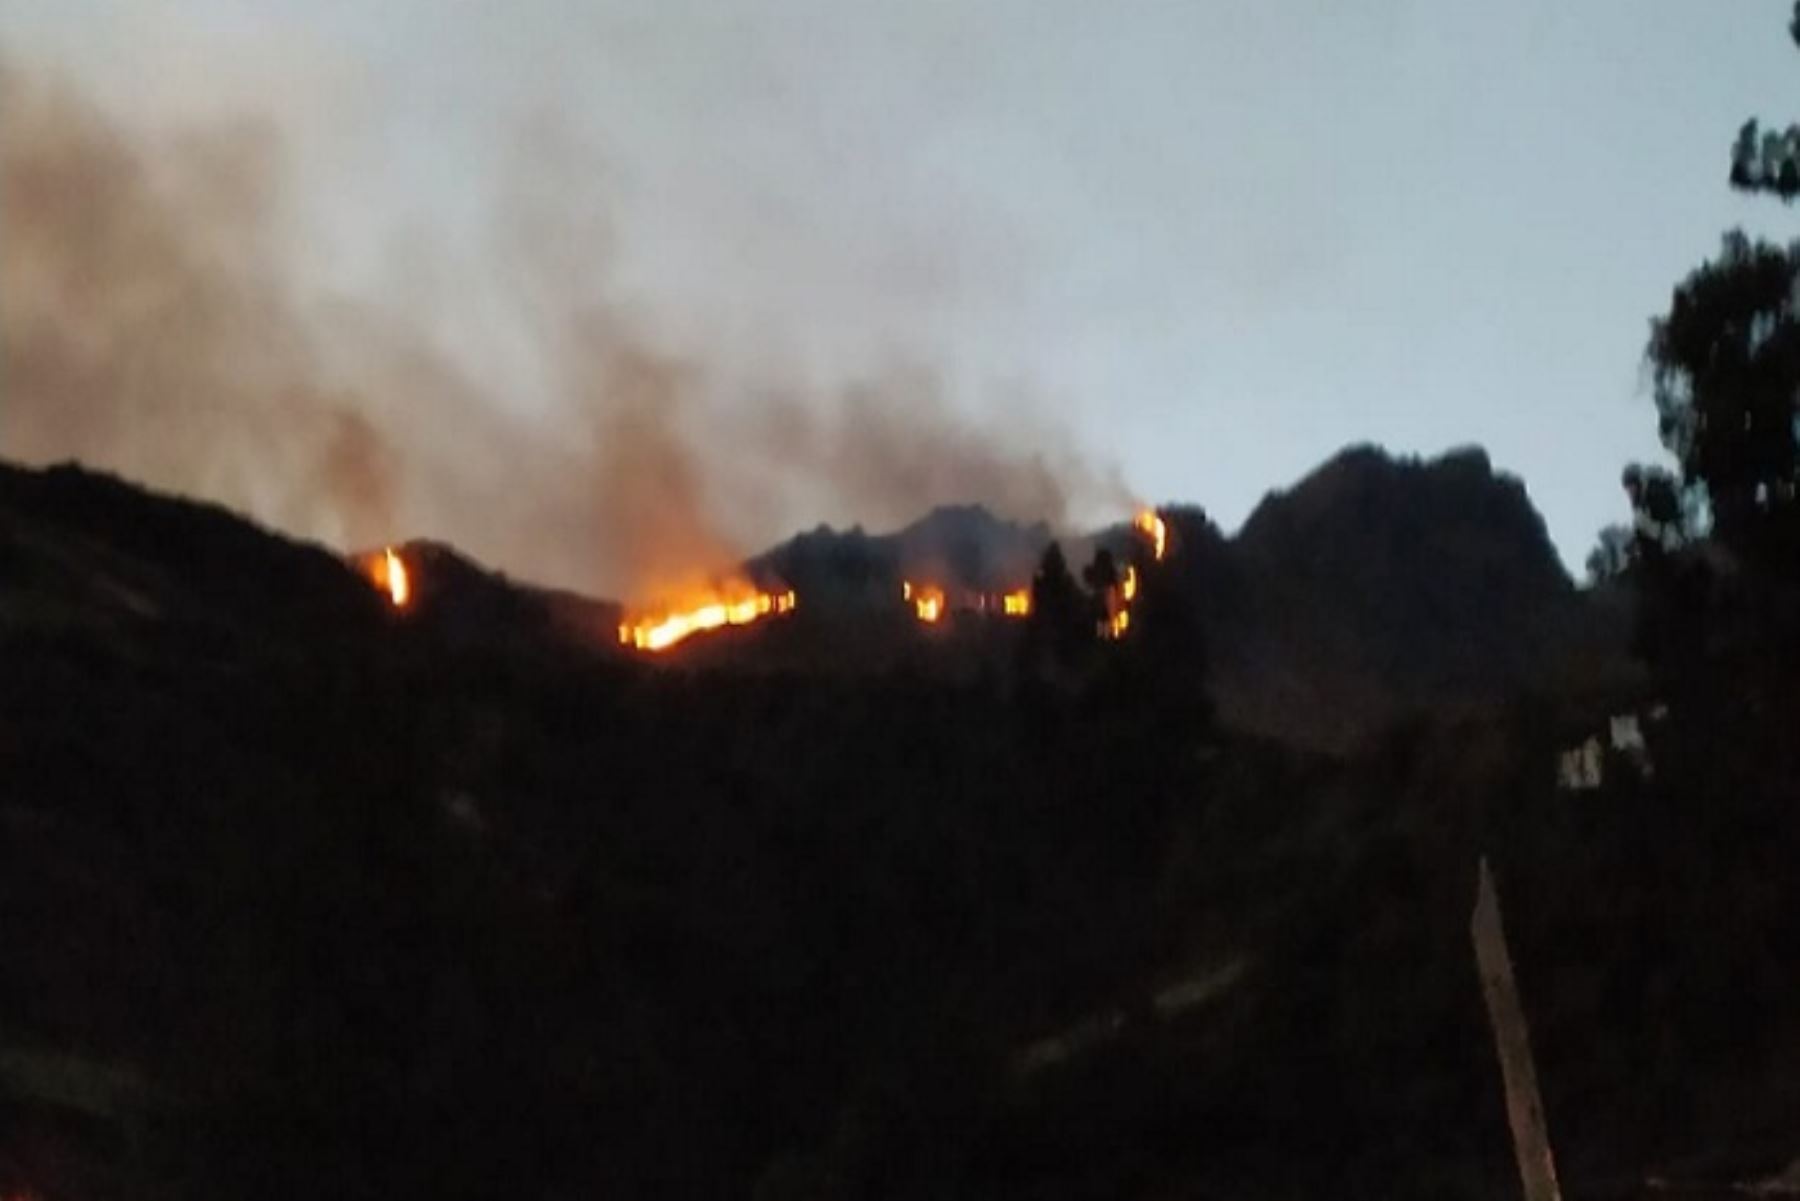 El COER Äncash instó a la población no realizar ningún tipo de quemas porque pueden convertirse en incendios y generan graves daños a los medios de vida, a la salud de las personas y al ecosistema en general.